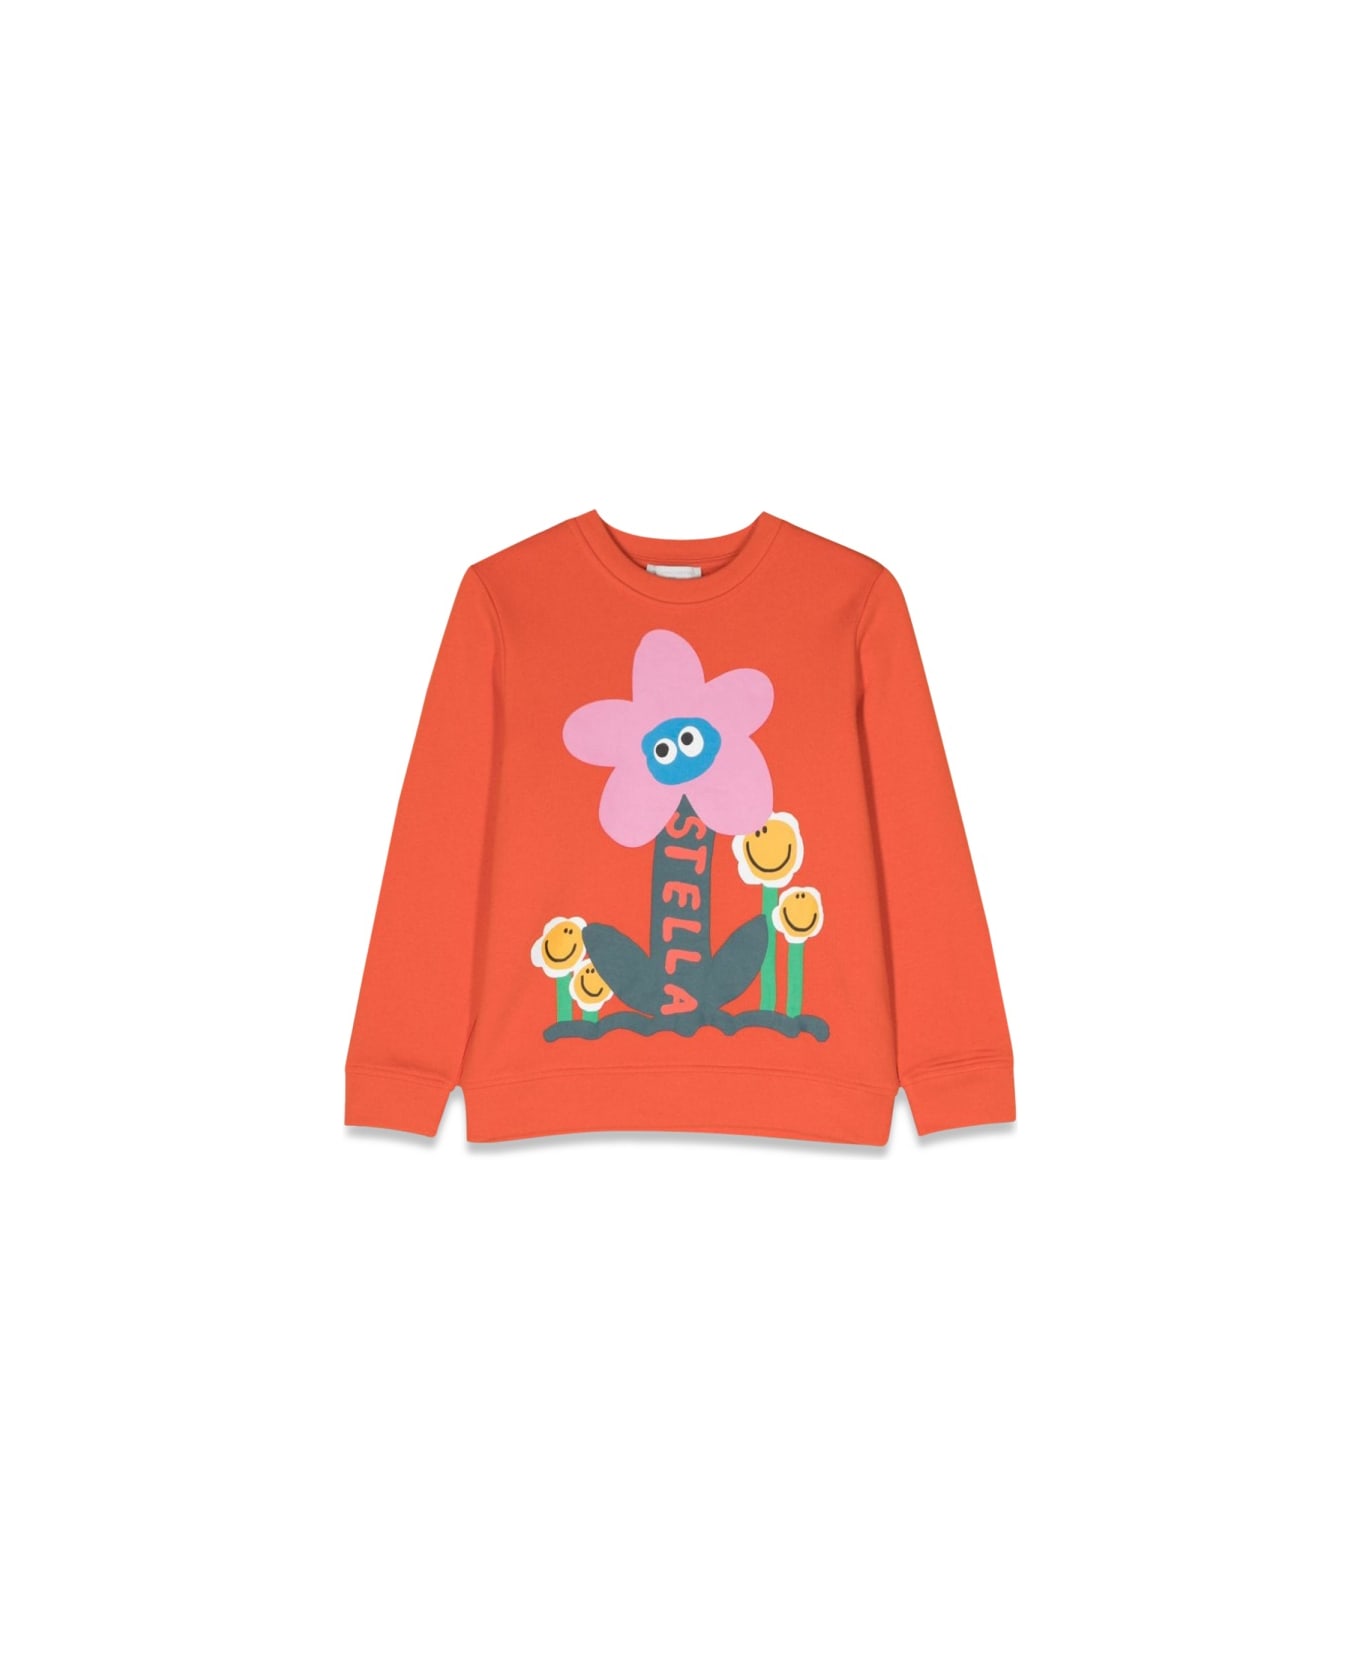 Stella McCartney Kids Flower Crewneck Sweatshirt - ORANGE